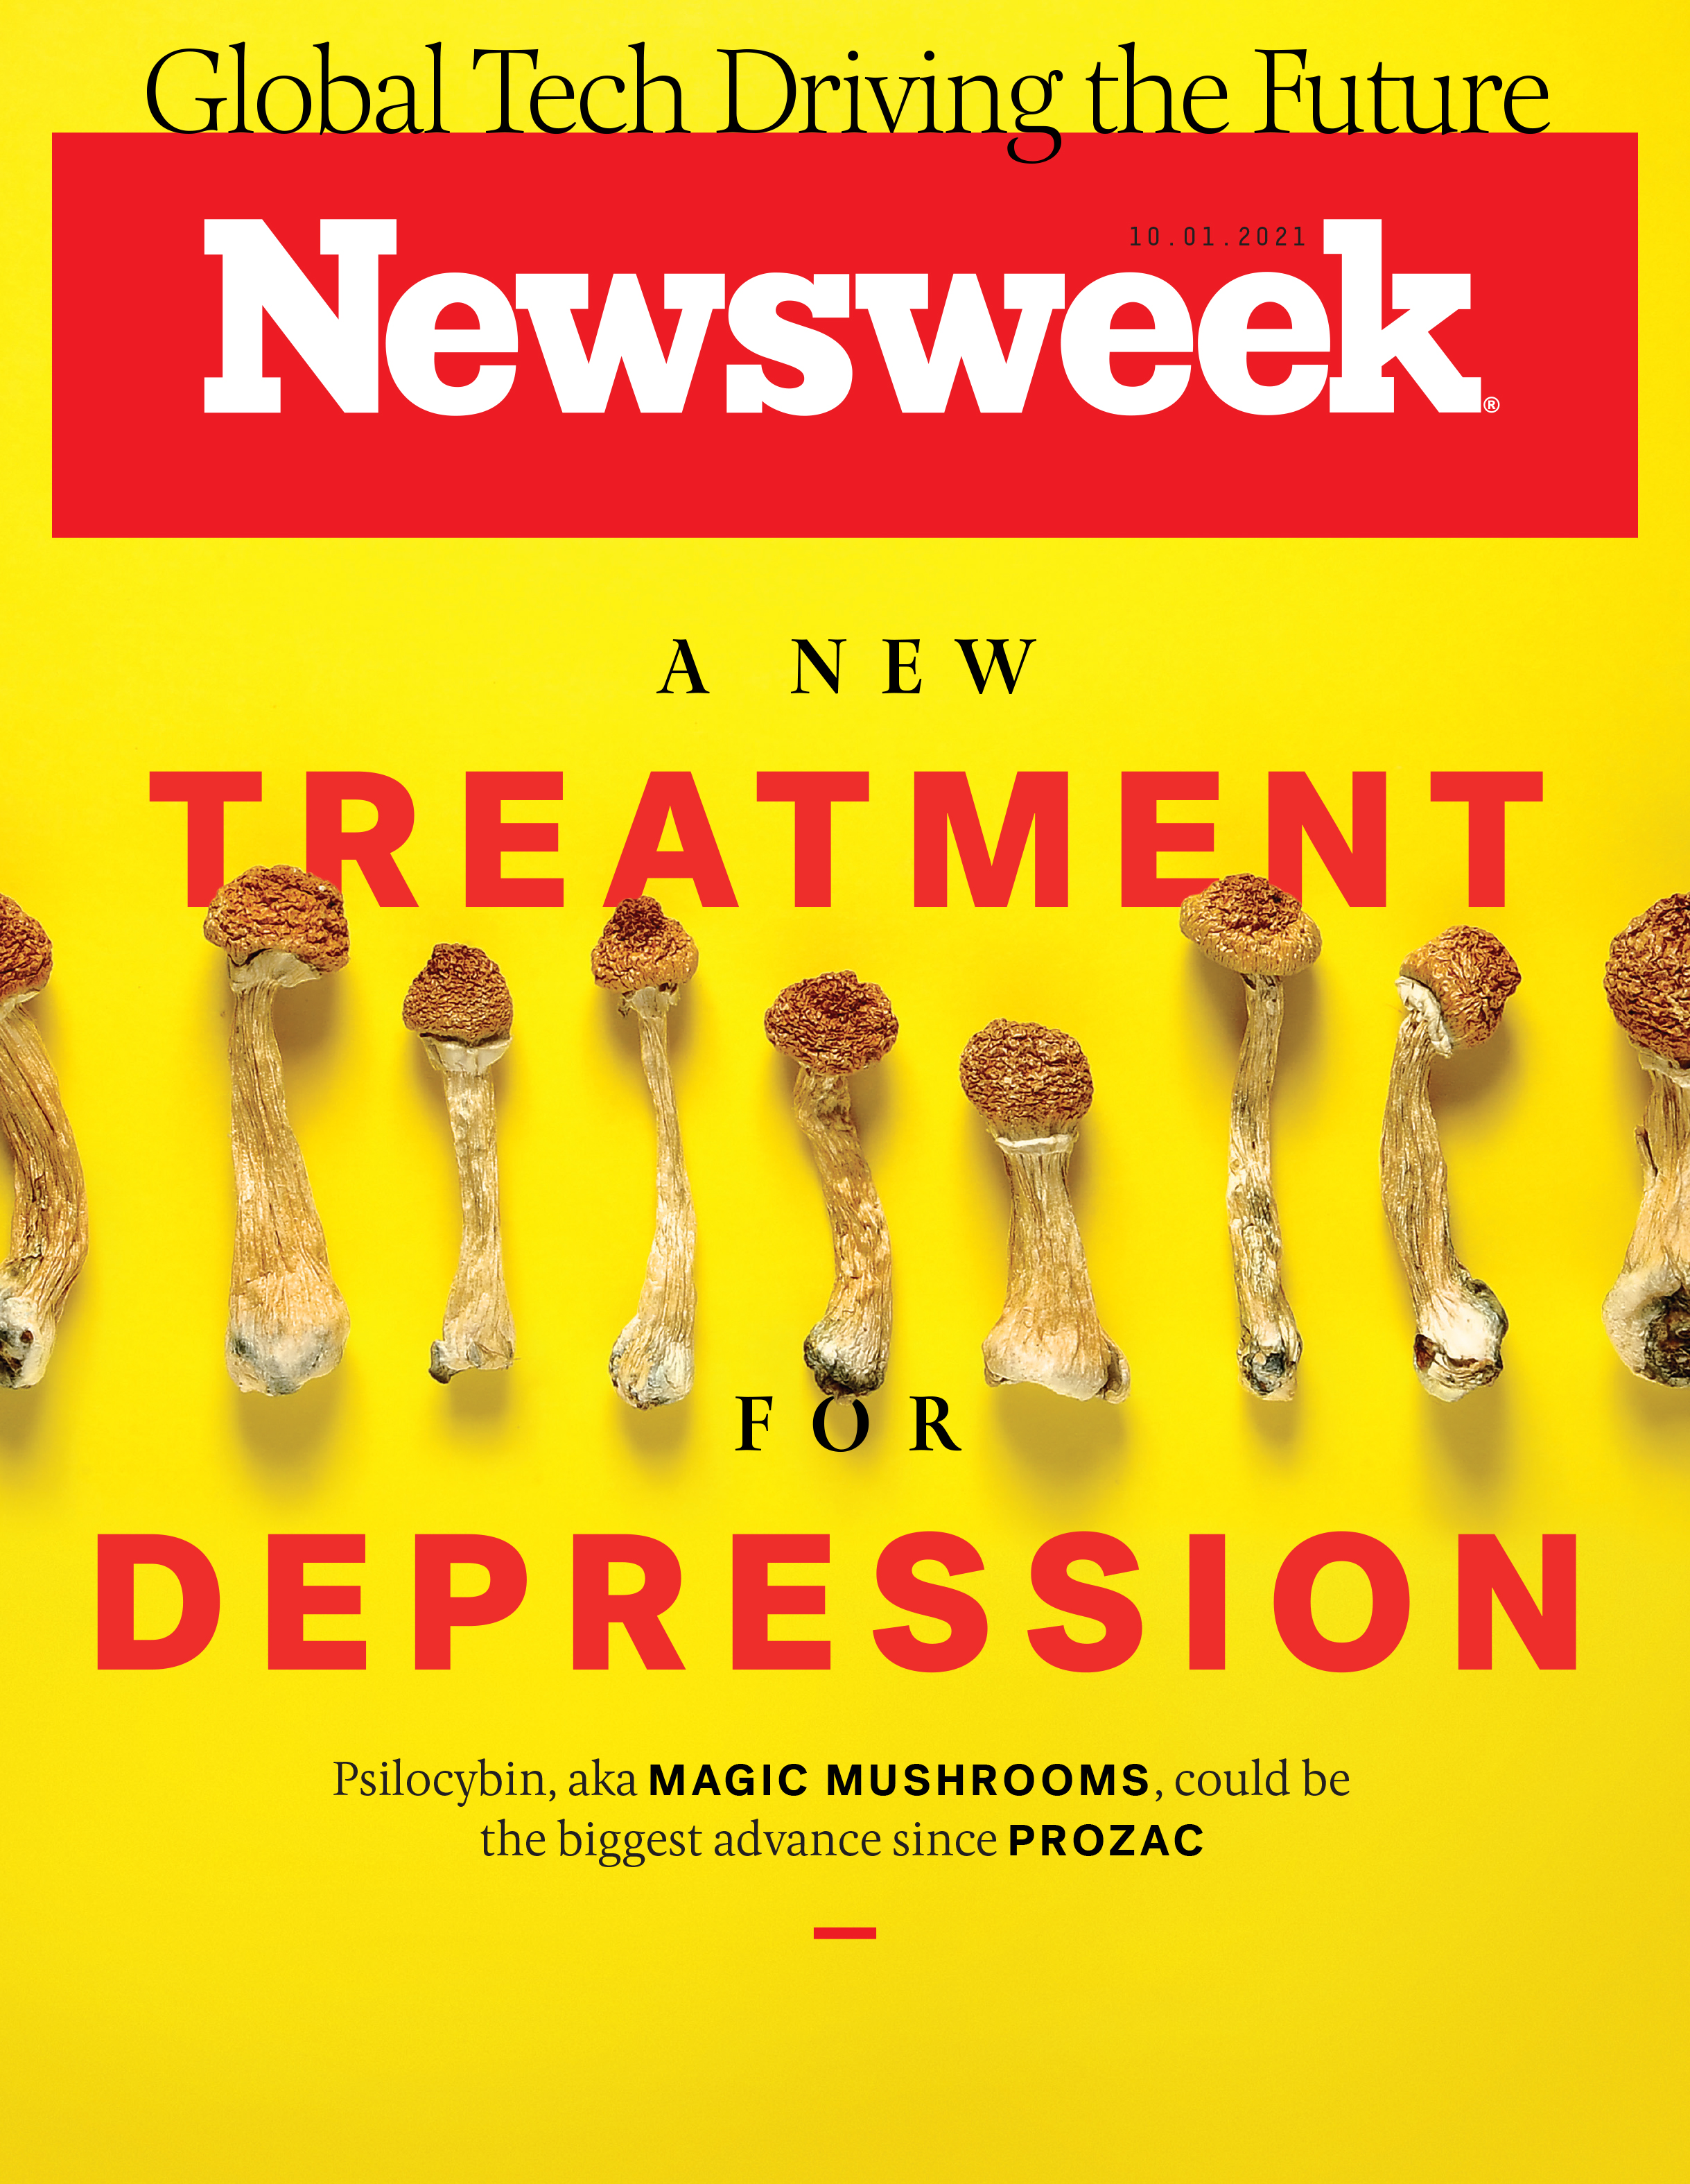 www.newsweek.com